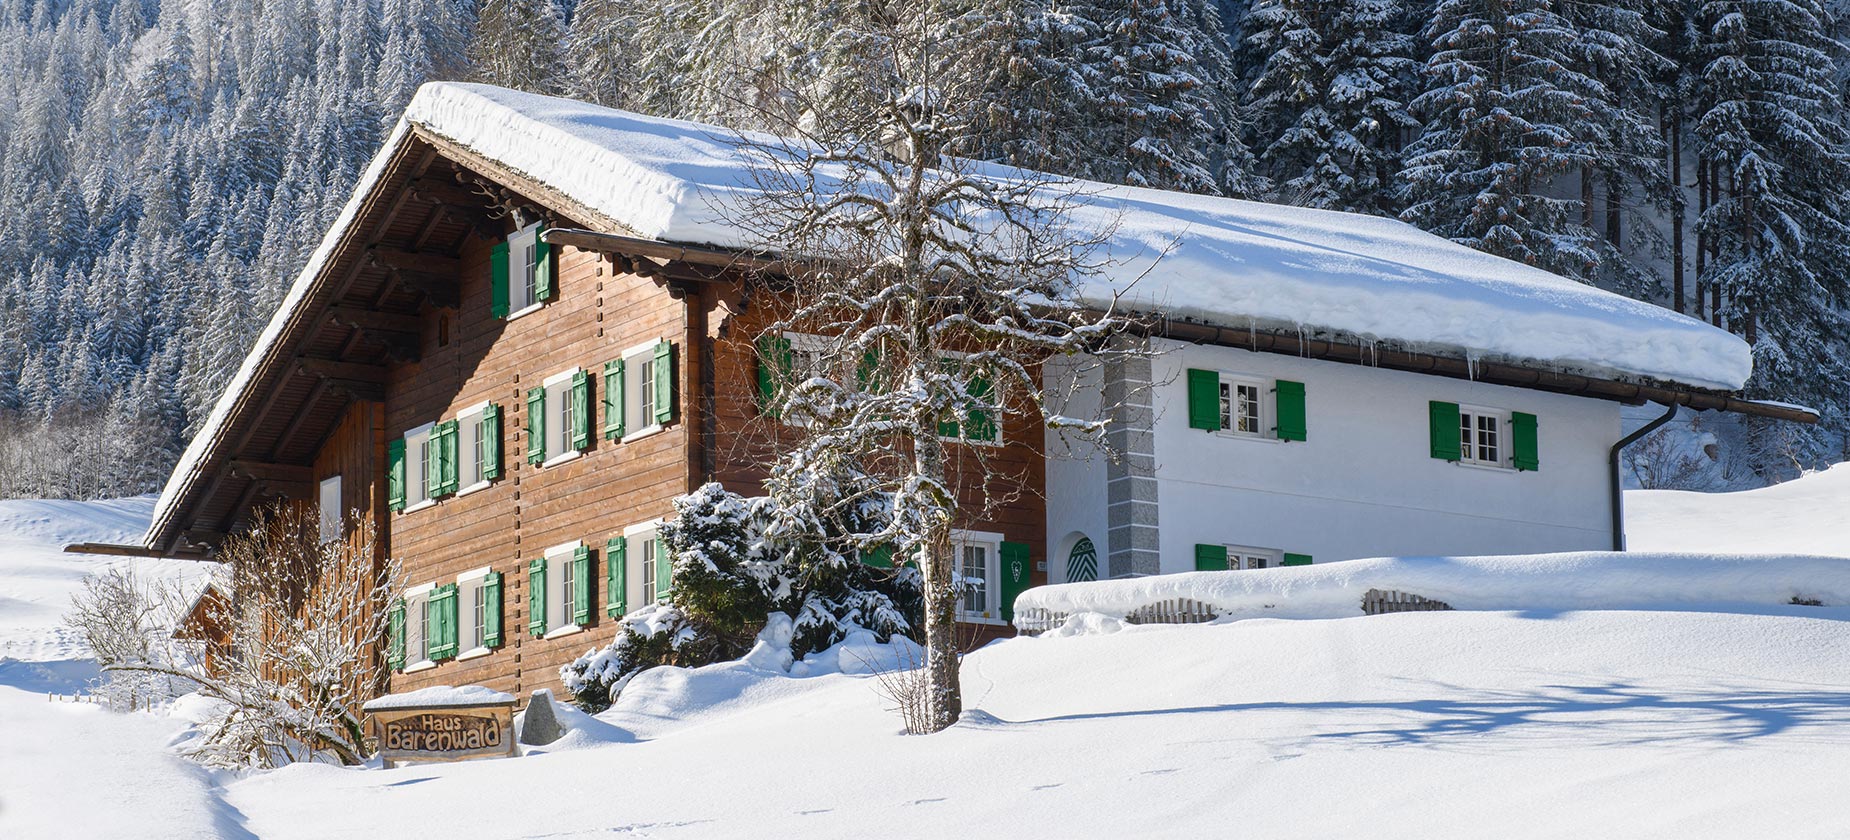 Landhaus Bärenwald Montafon Winter